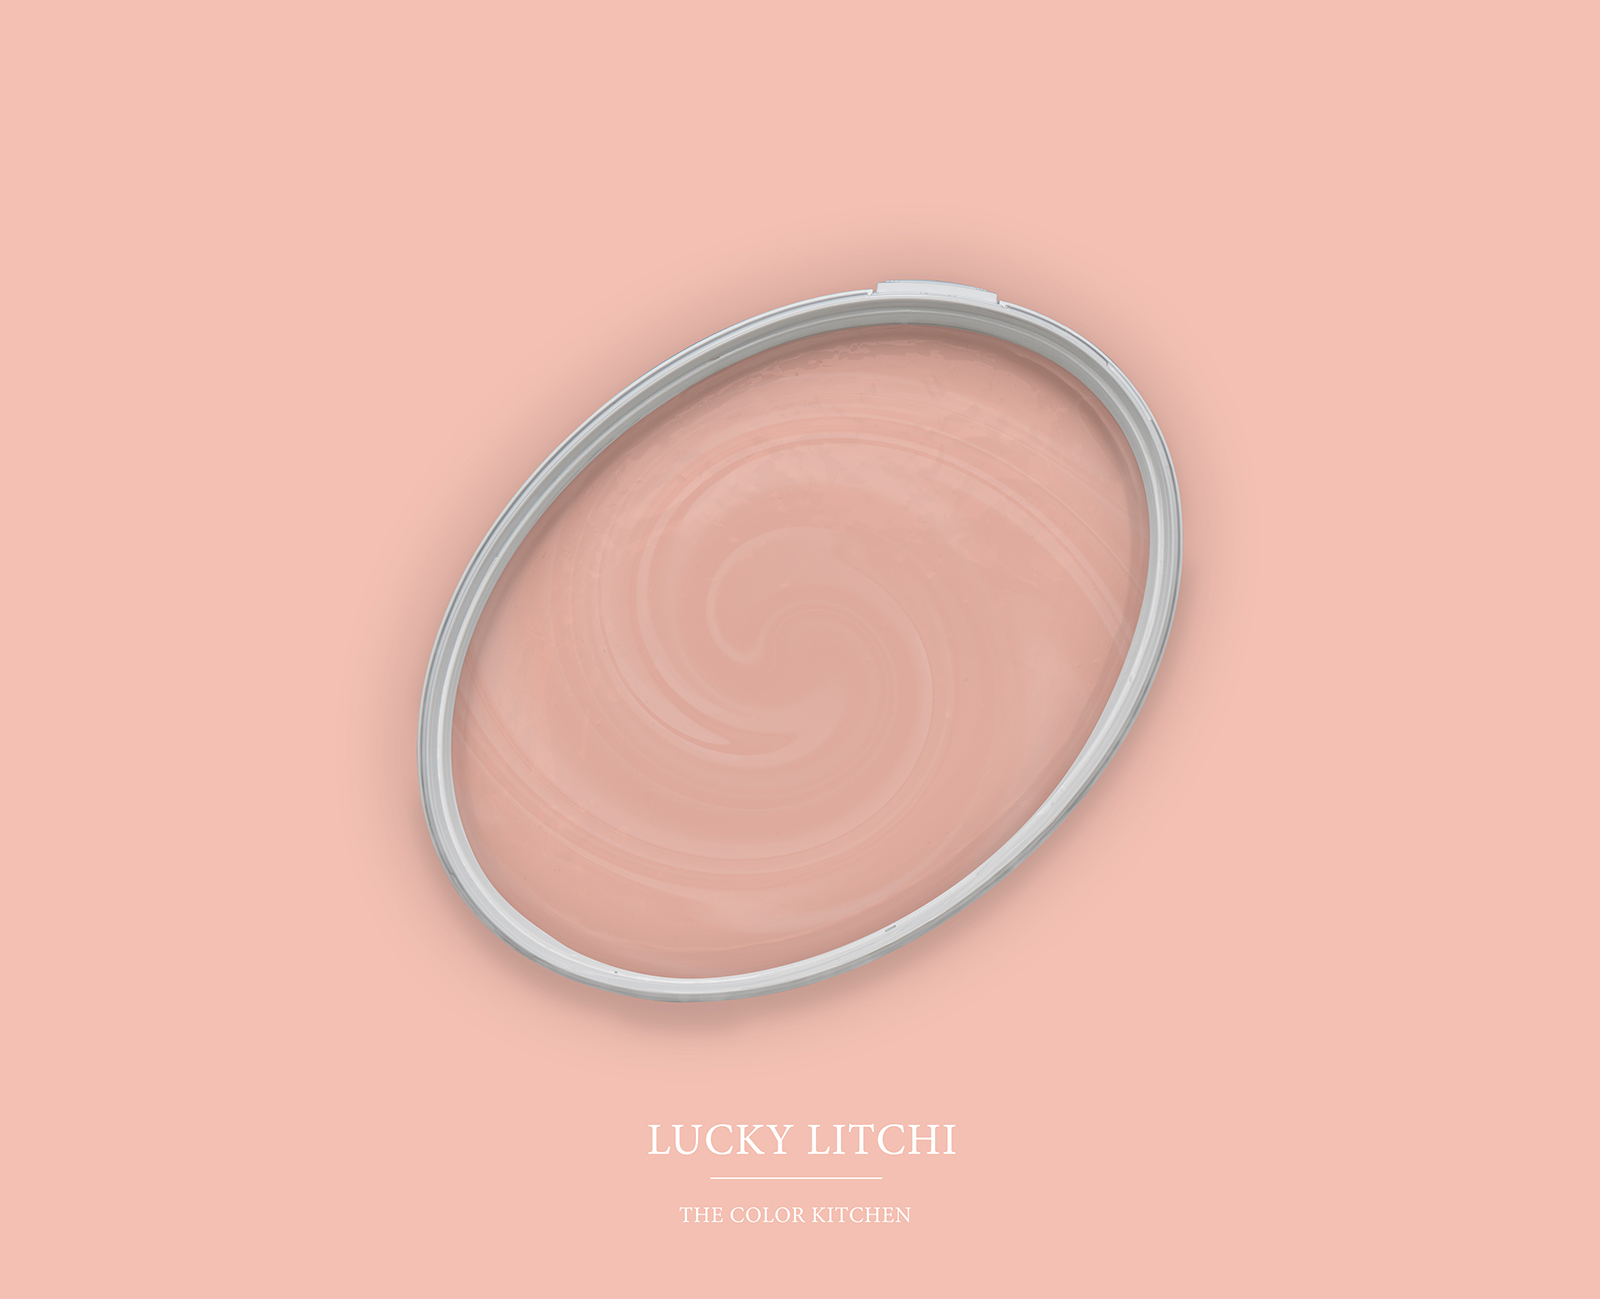         Wall Paint TCK7003 »Lucky Litchi« in light pink – 2.5 litre
    